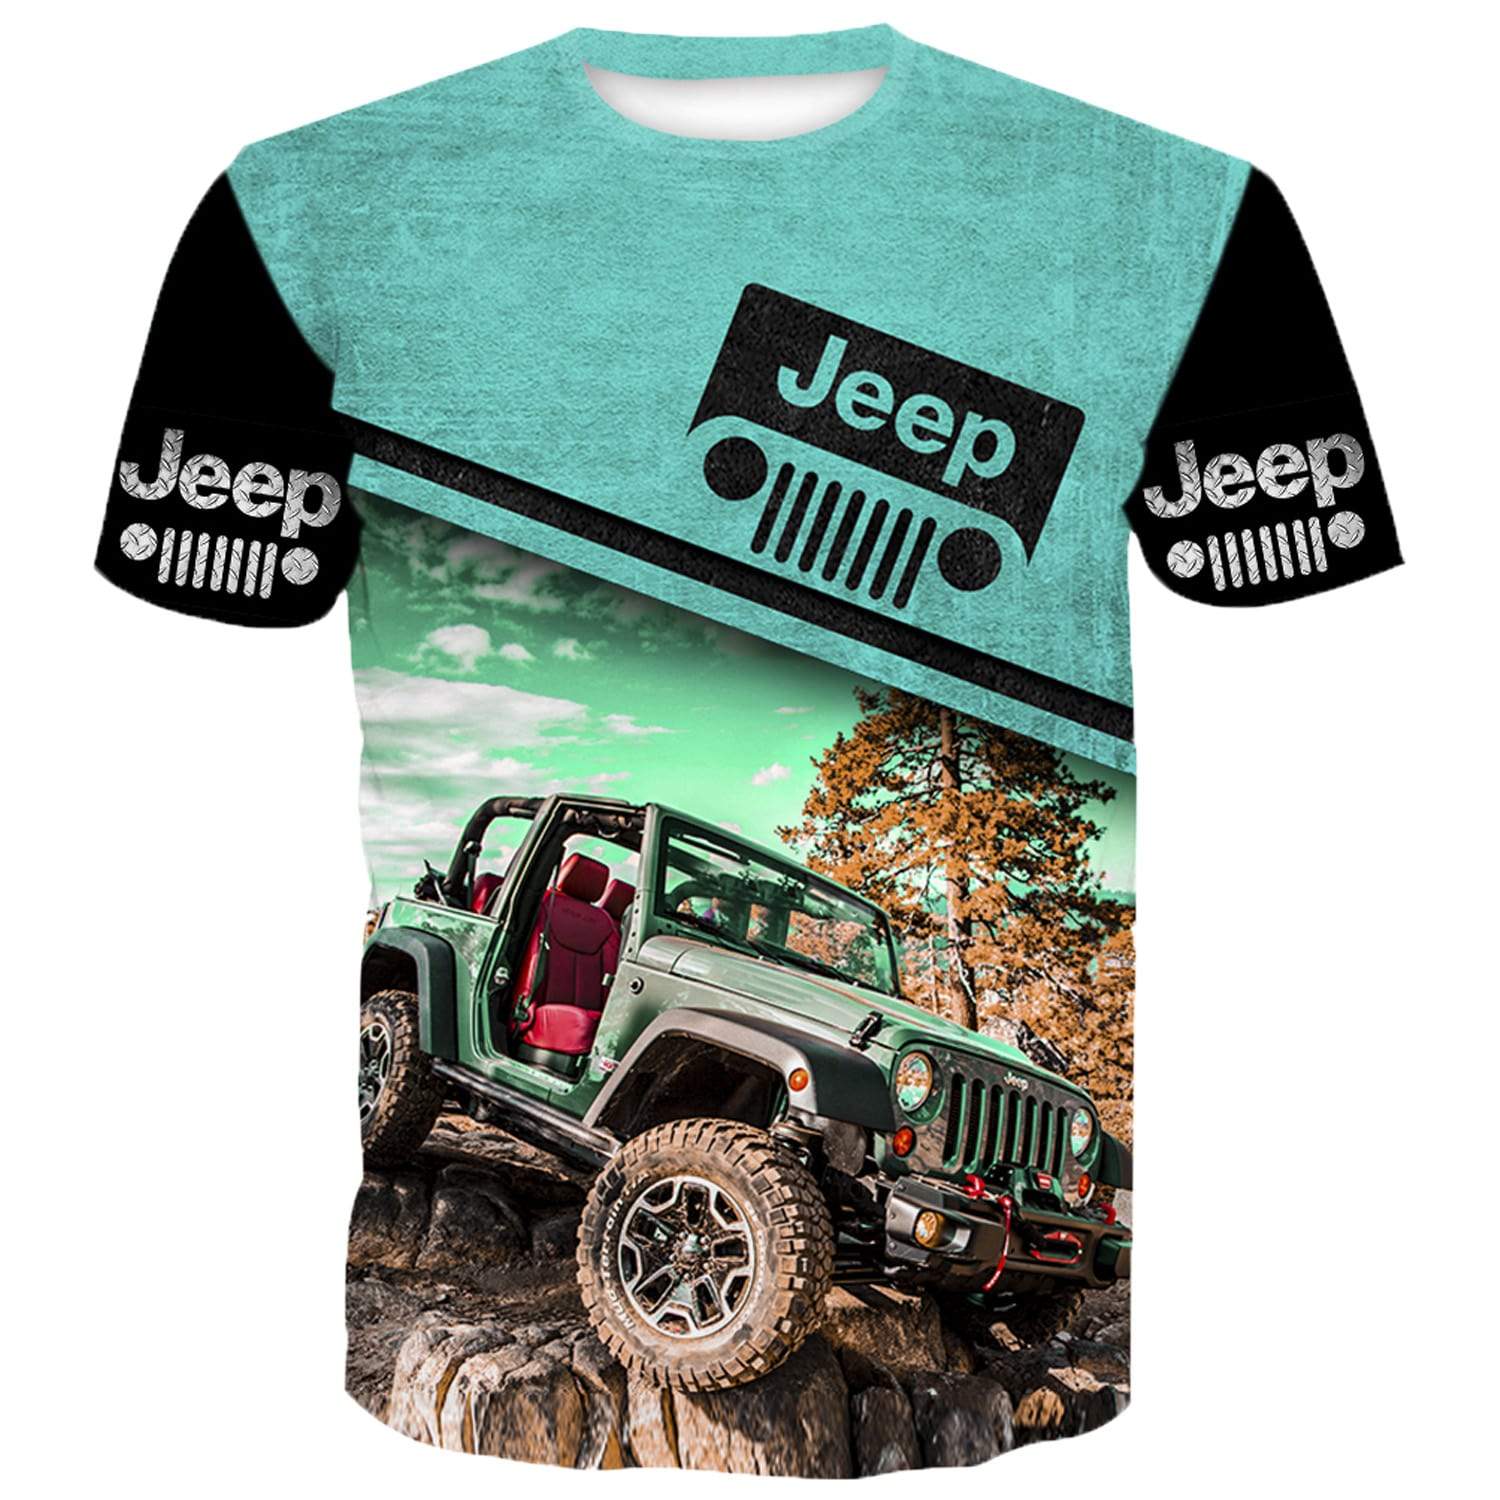 Boxtroll Fish Shirt Personalized Kids Jeep Shirt by HeadlessShirts